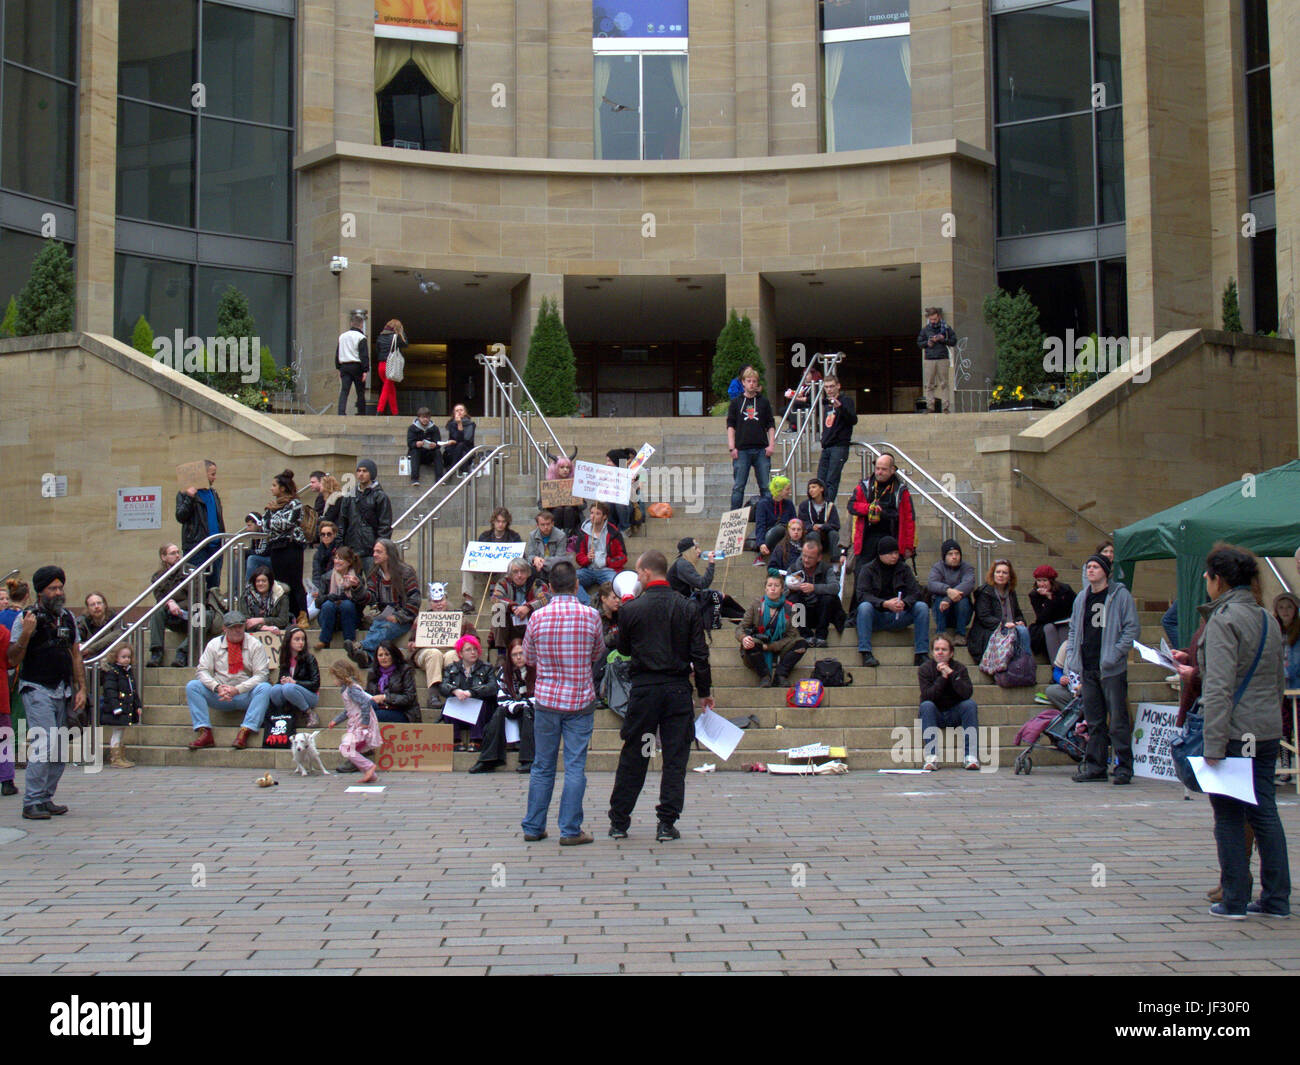 La genética ecológica protesta contra Monsanto en los escalones de la Royal Concert Hall de Glasgow Foto de stock